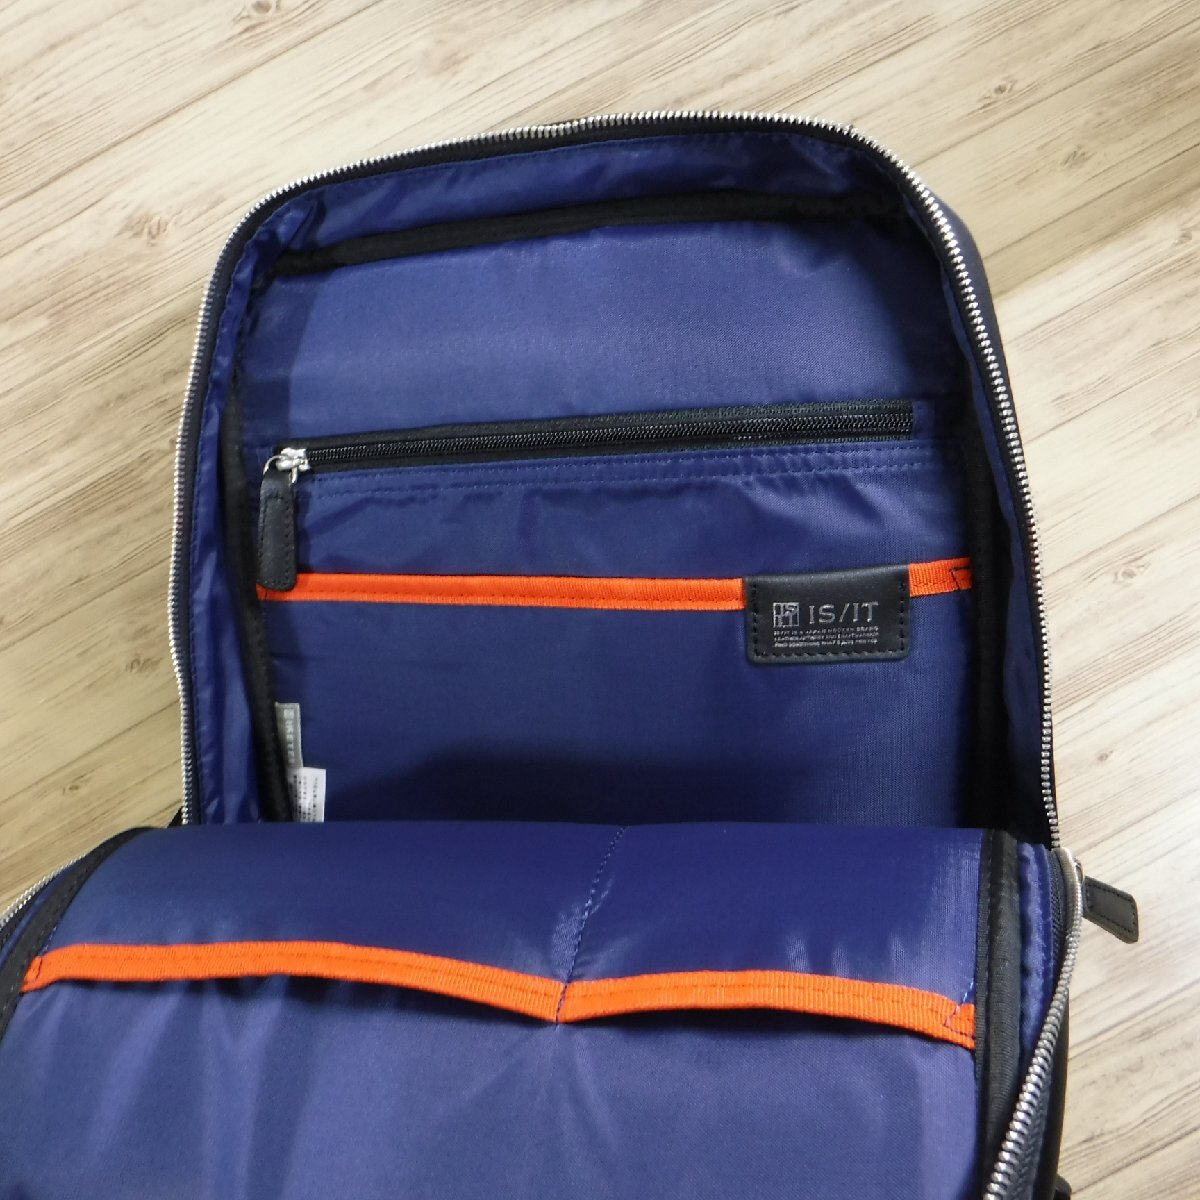 BB983izito обычная цена 25300 иен новый товар чёрный 2WAY кожа деловой рюкзак водоотталкивающий A4 размер выставить соответствует PC место хранения IS/ITsafi-ru937701